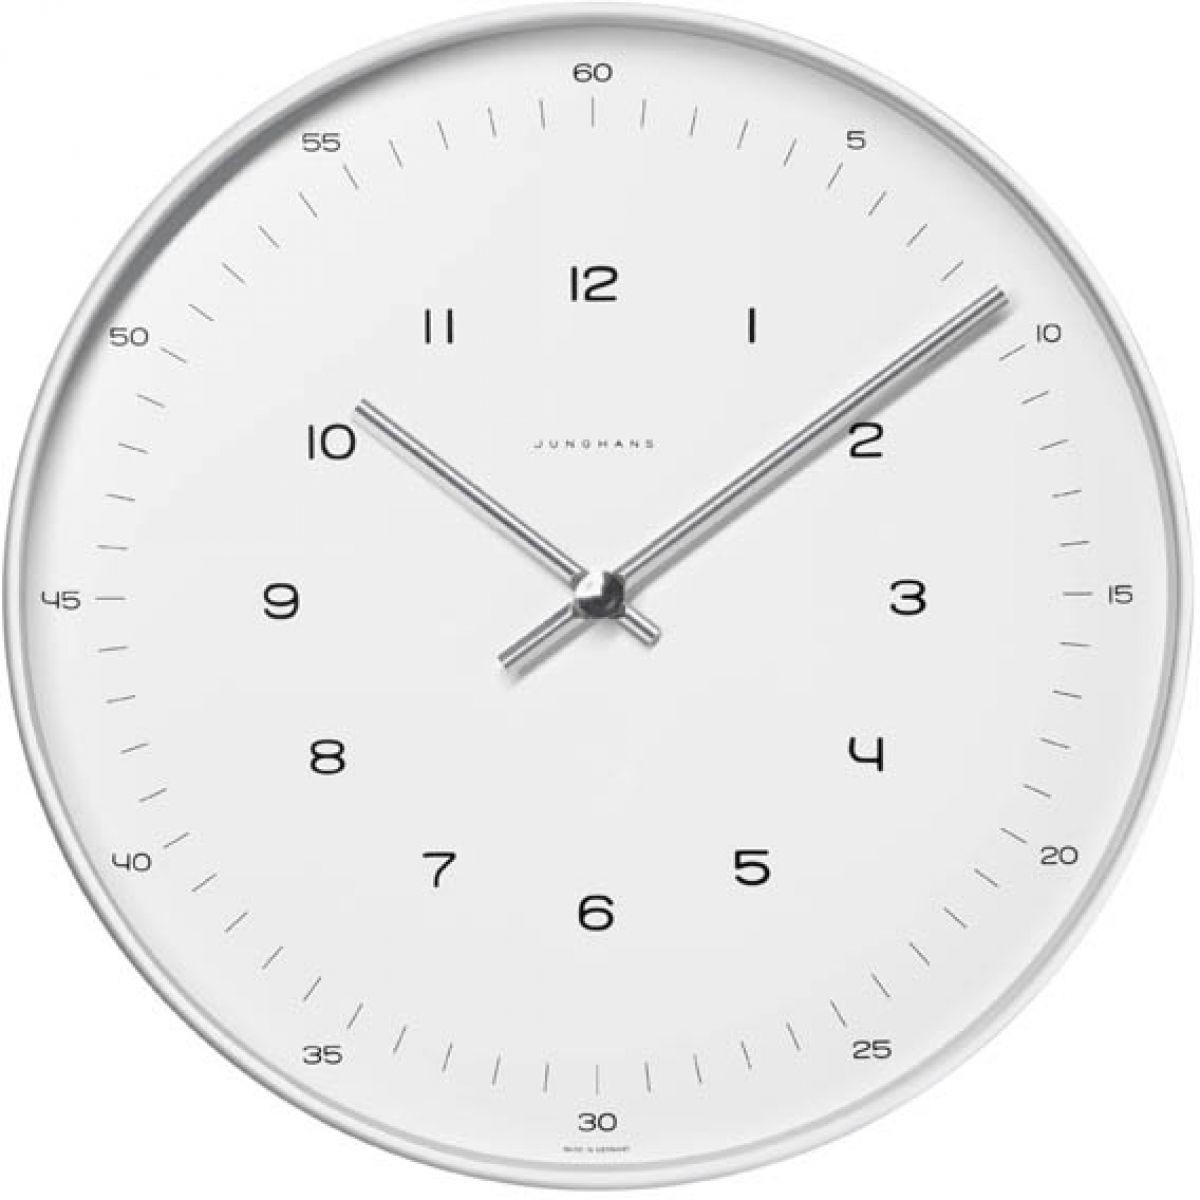 horloge-max-bill-quartz-1